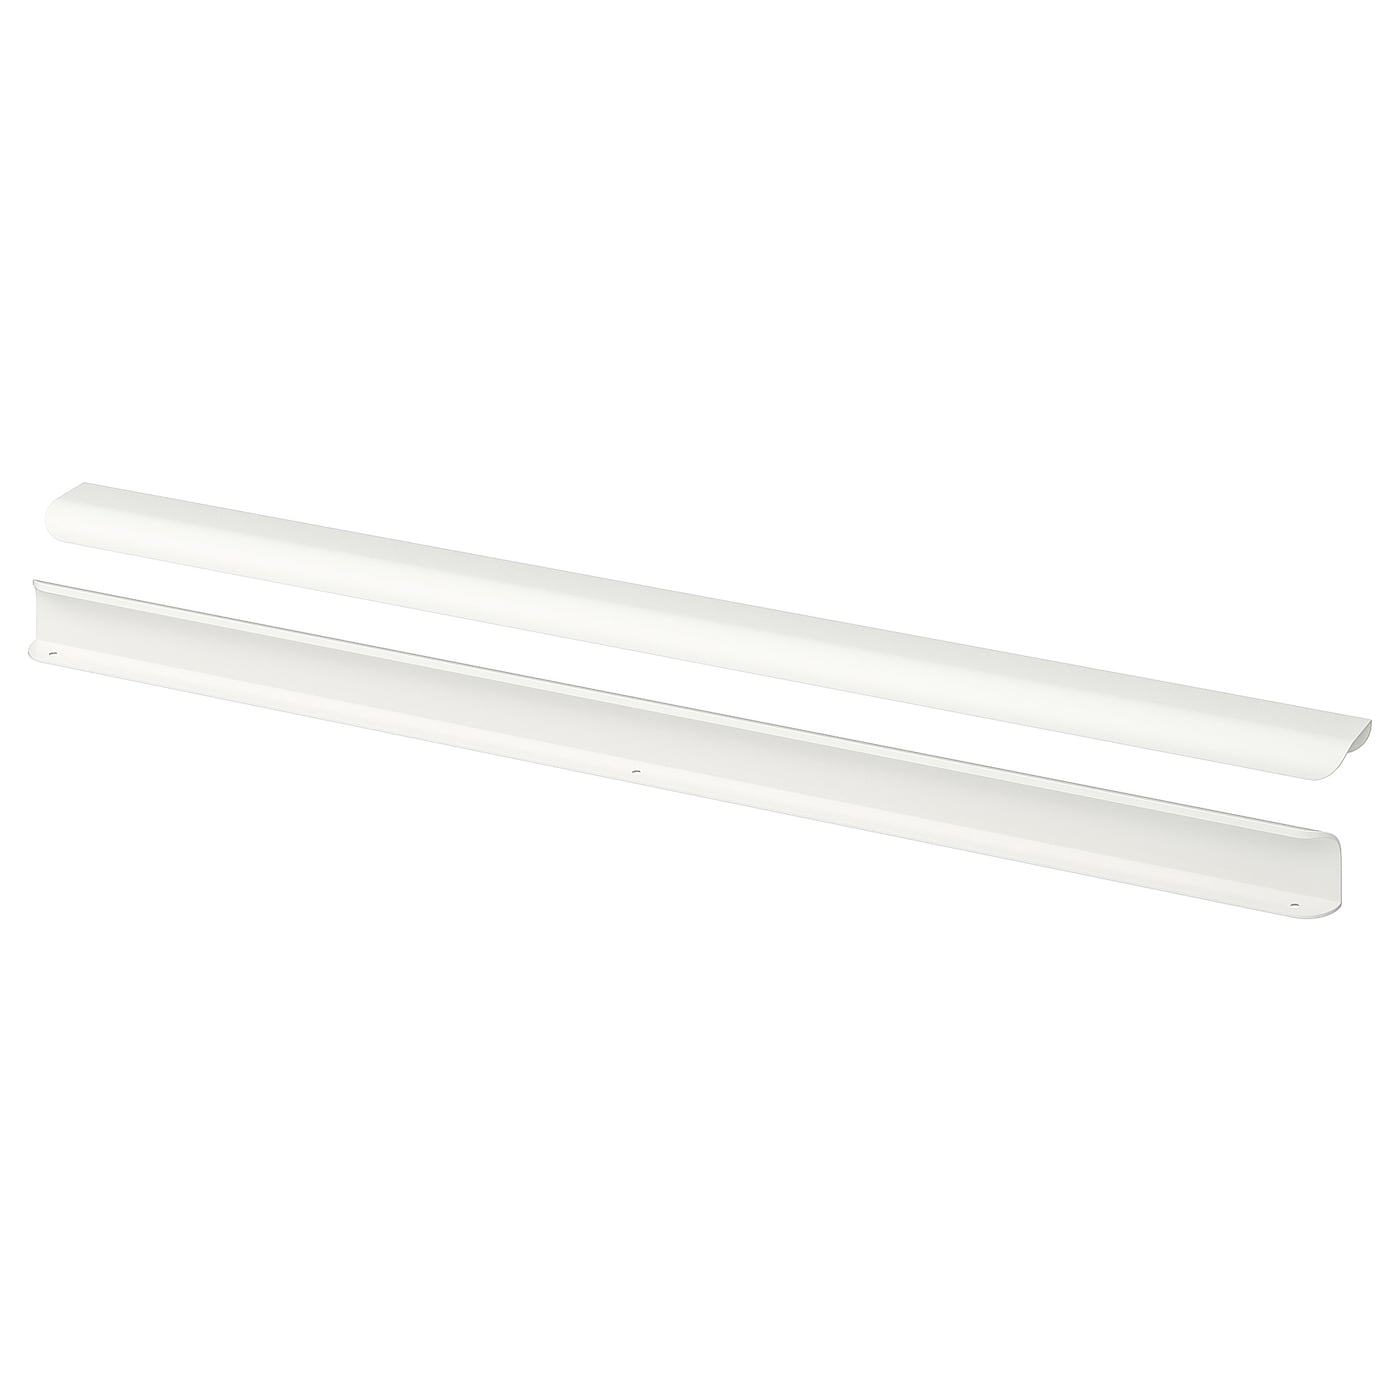 Ручка-скоба - IKEA BILLSBRO, 72 см, белый, БИЛЛЬСБРУ ИКЕА